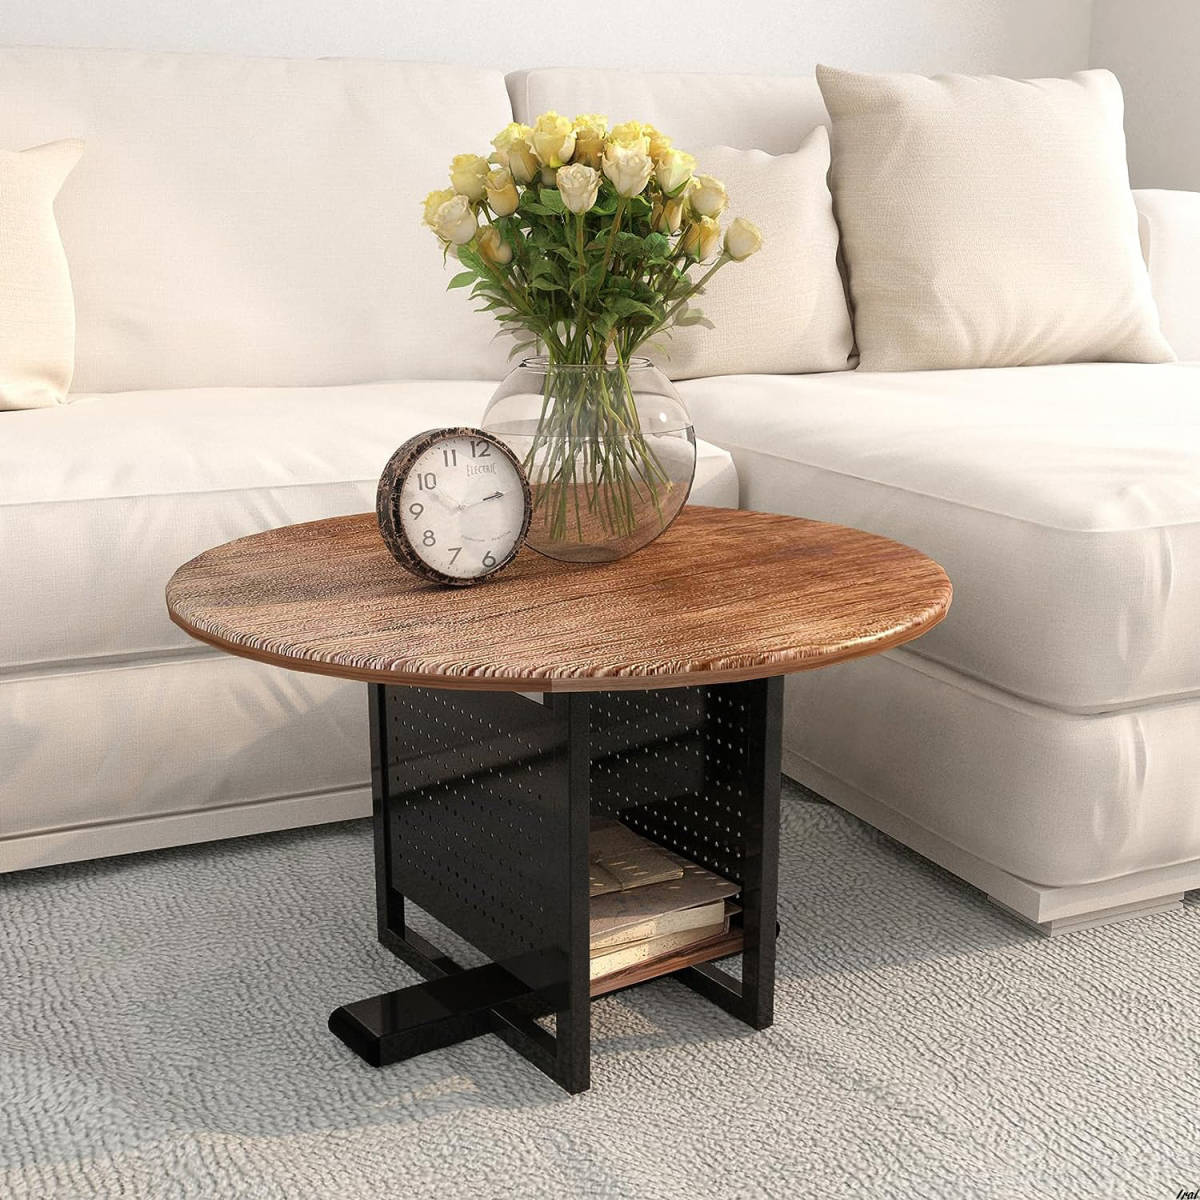 コーヒーテーブル ローテーブル センターテーブル 木製 2段 収納 おしゃれ テーブル 一人暮らし リビングテーブル 丸